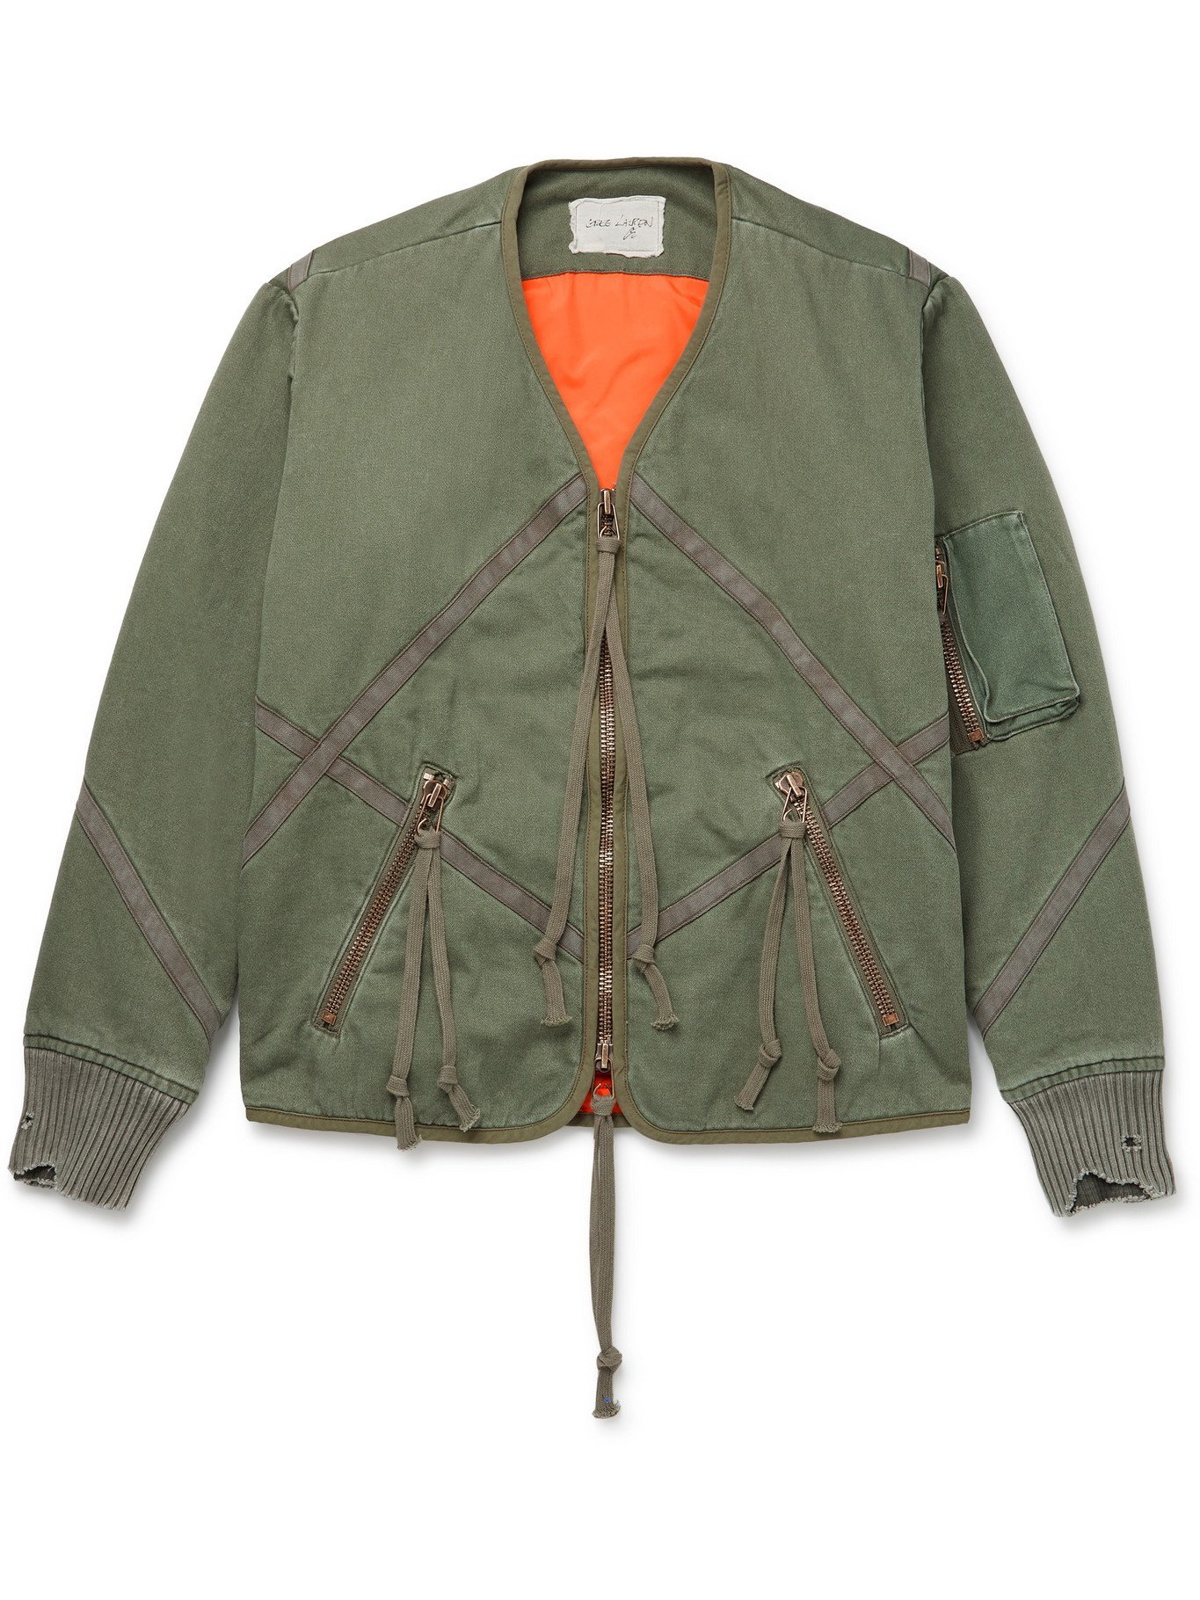 GREG LAUREN - Distressed Quilted Cotton Jacket - Green - 1 Greg Lauren